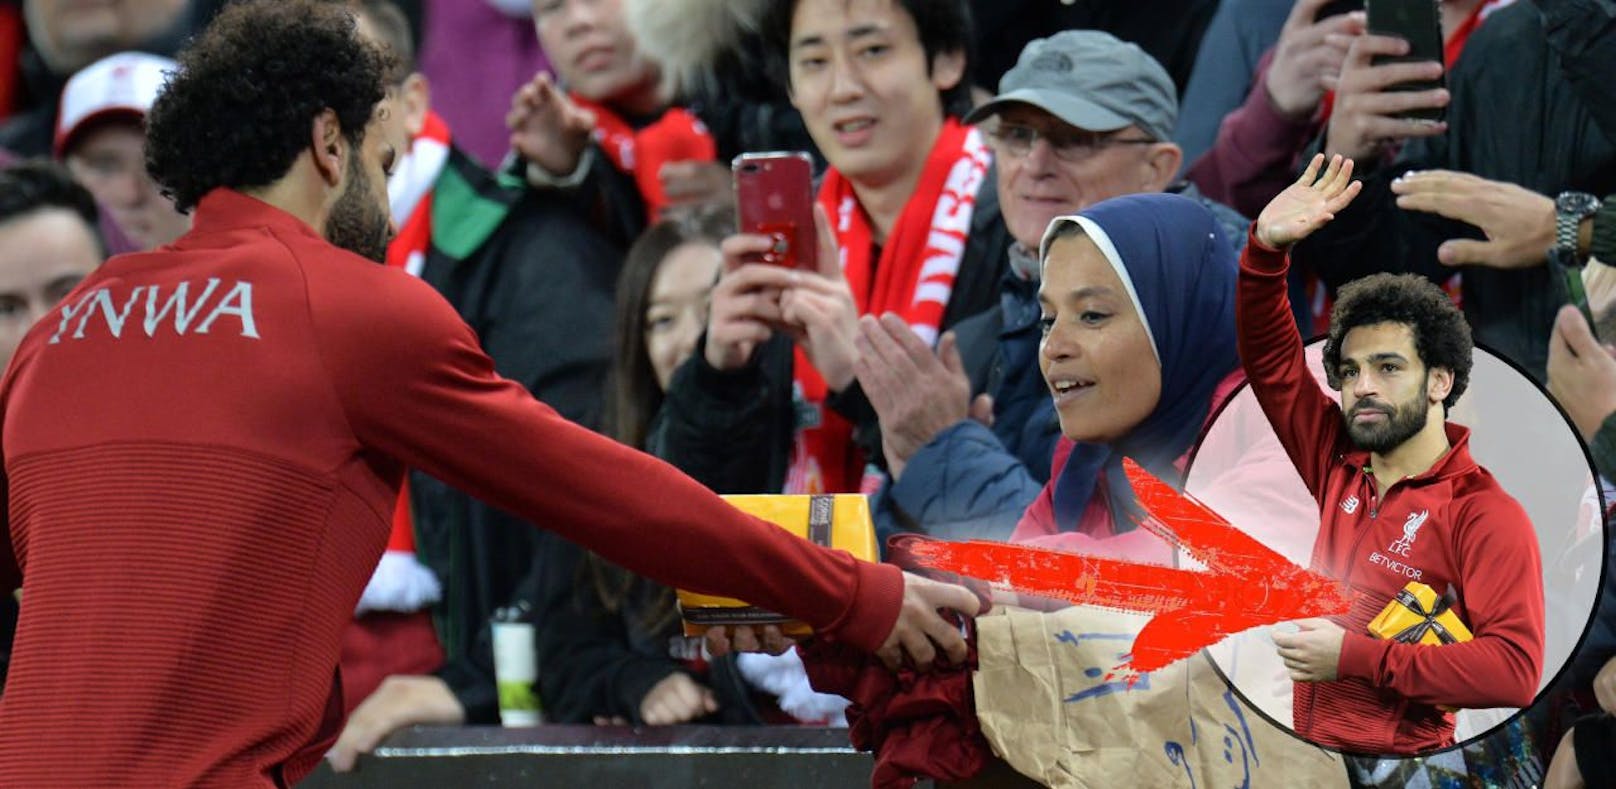 Mo Salah bekam ein Geschenk von einem weiblichen Fan. Er hält es in Ehren.